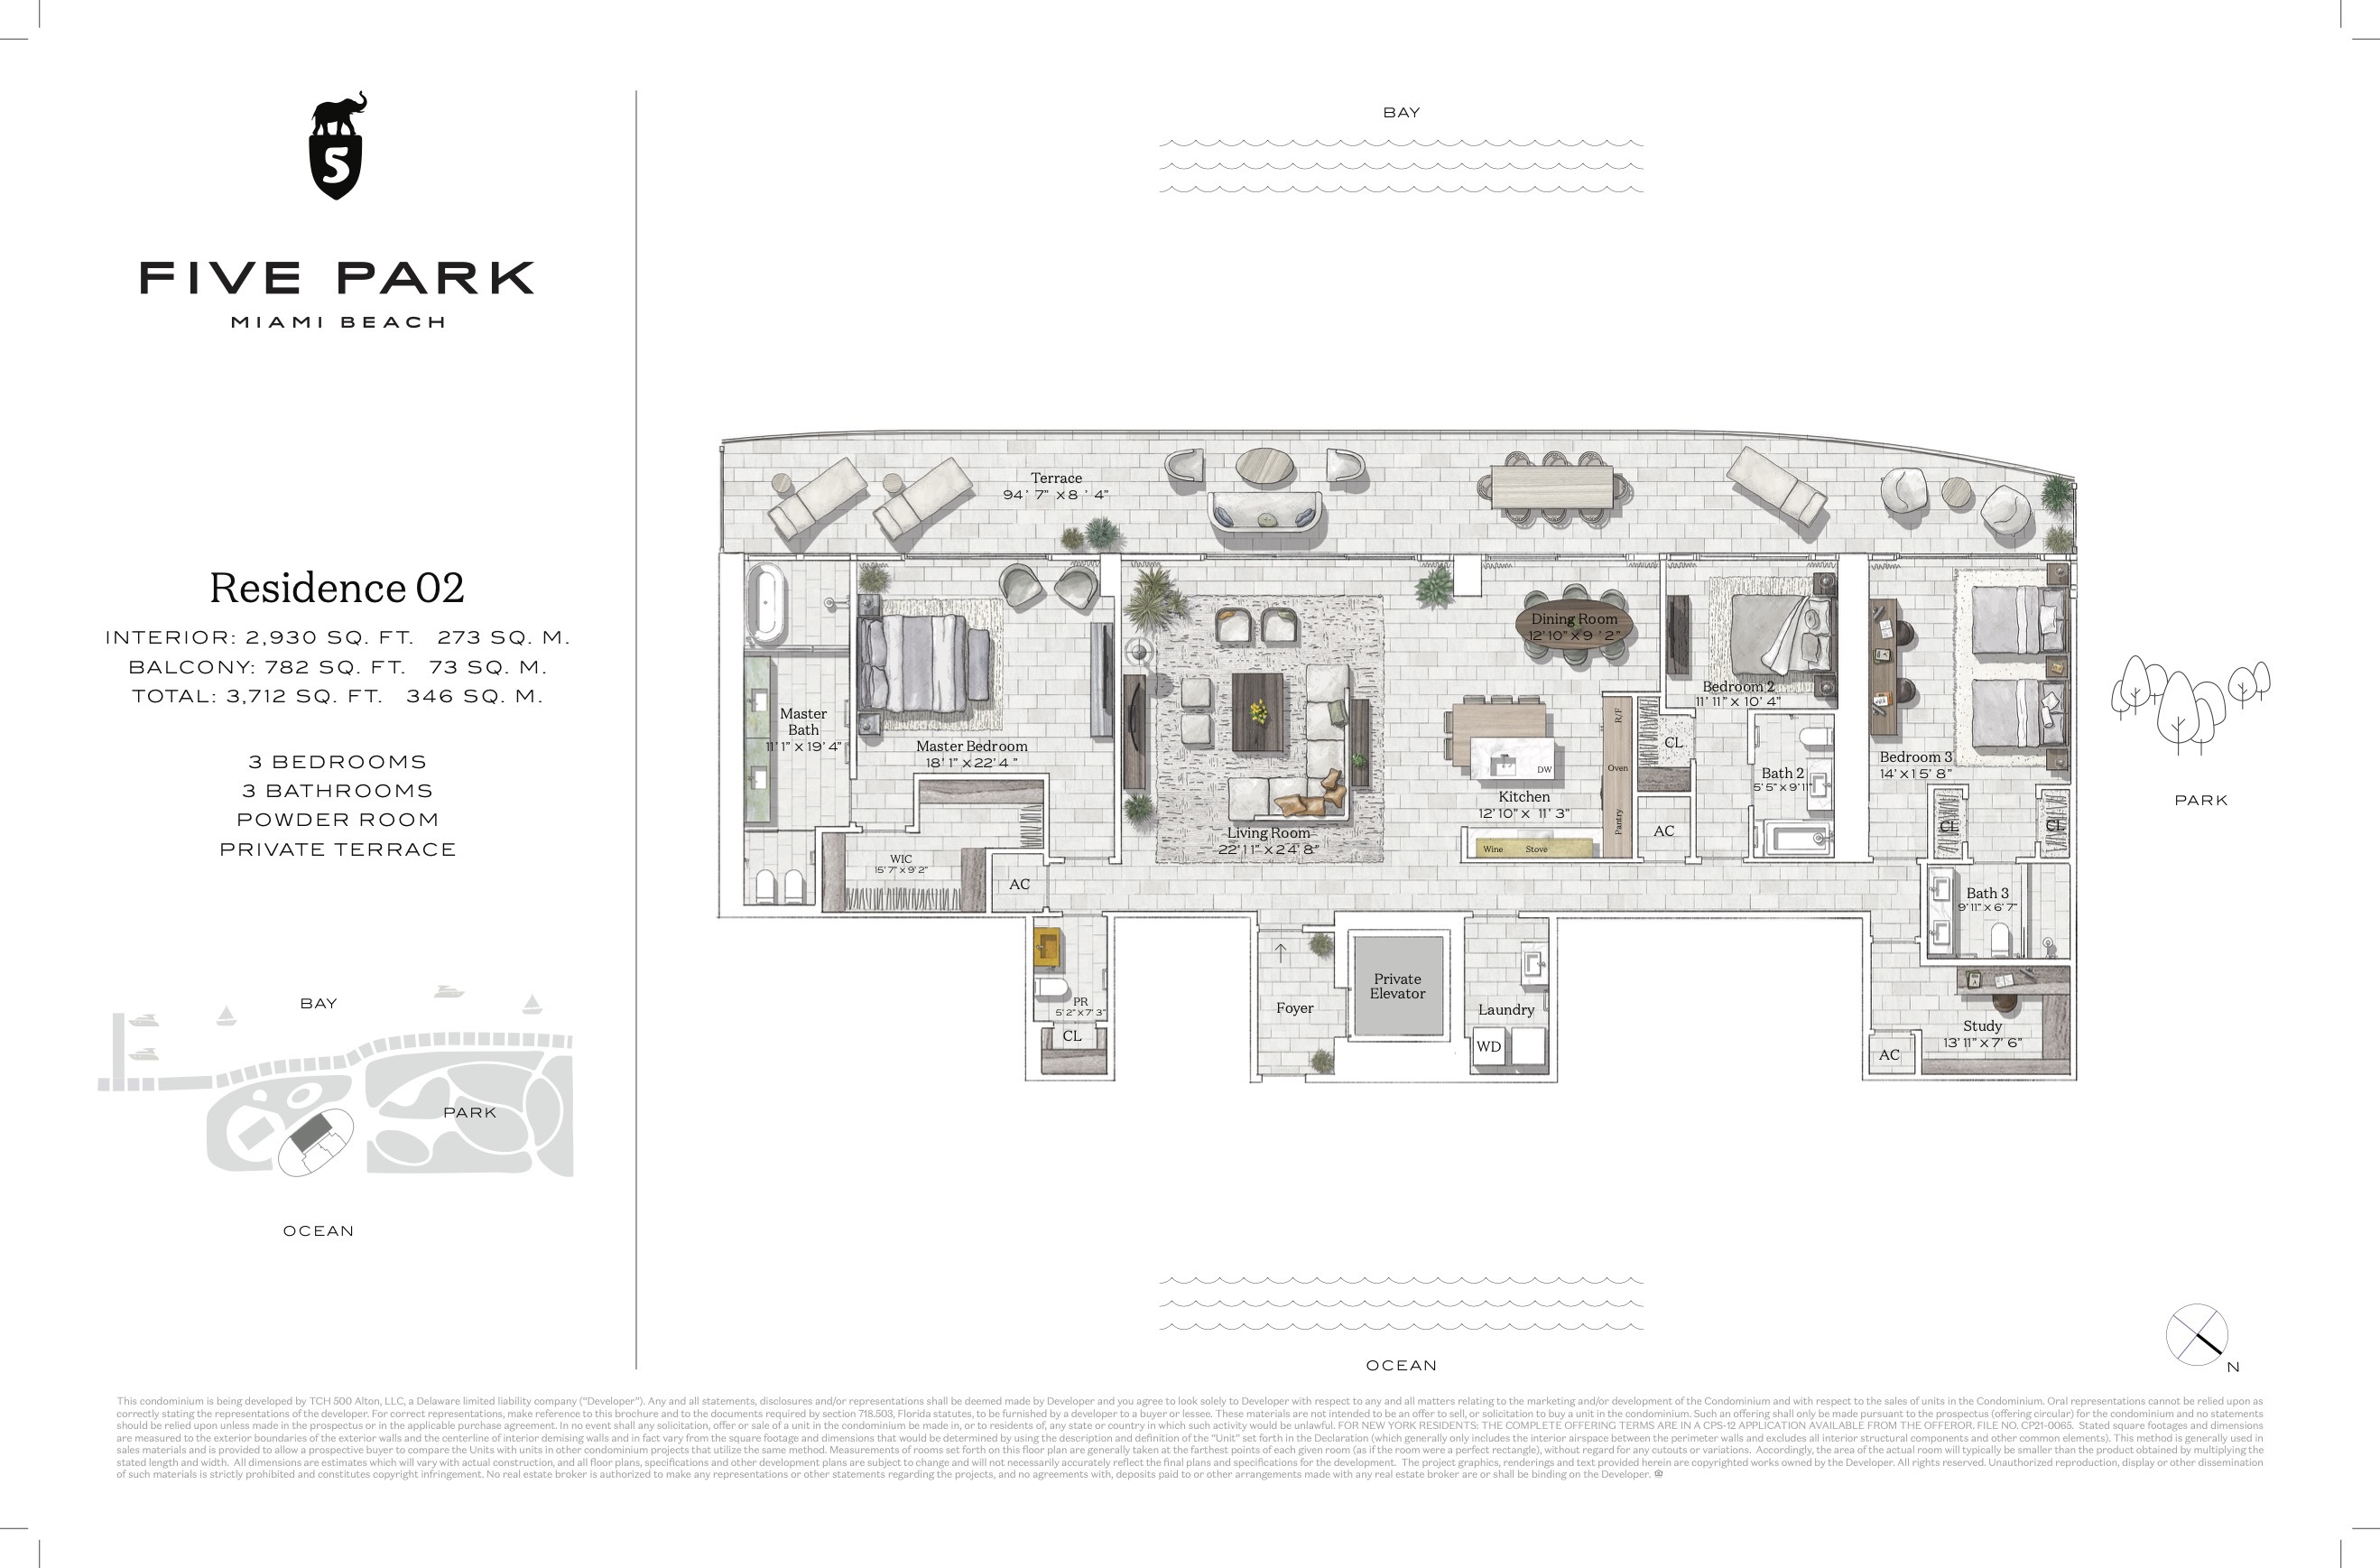 Floor Plan for Five Park Floor Plans, Residence 02